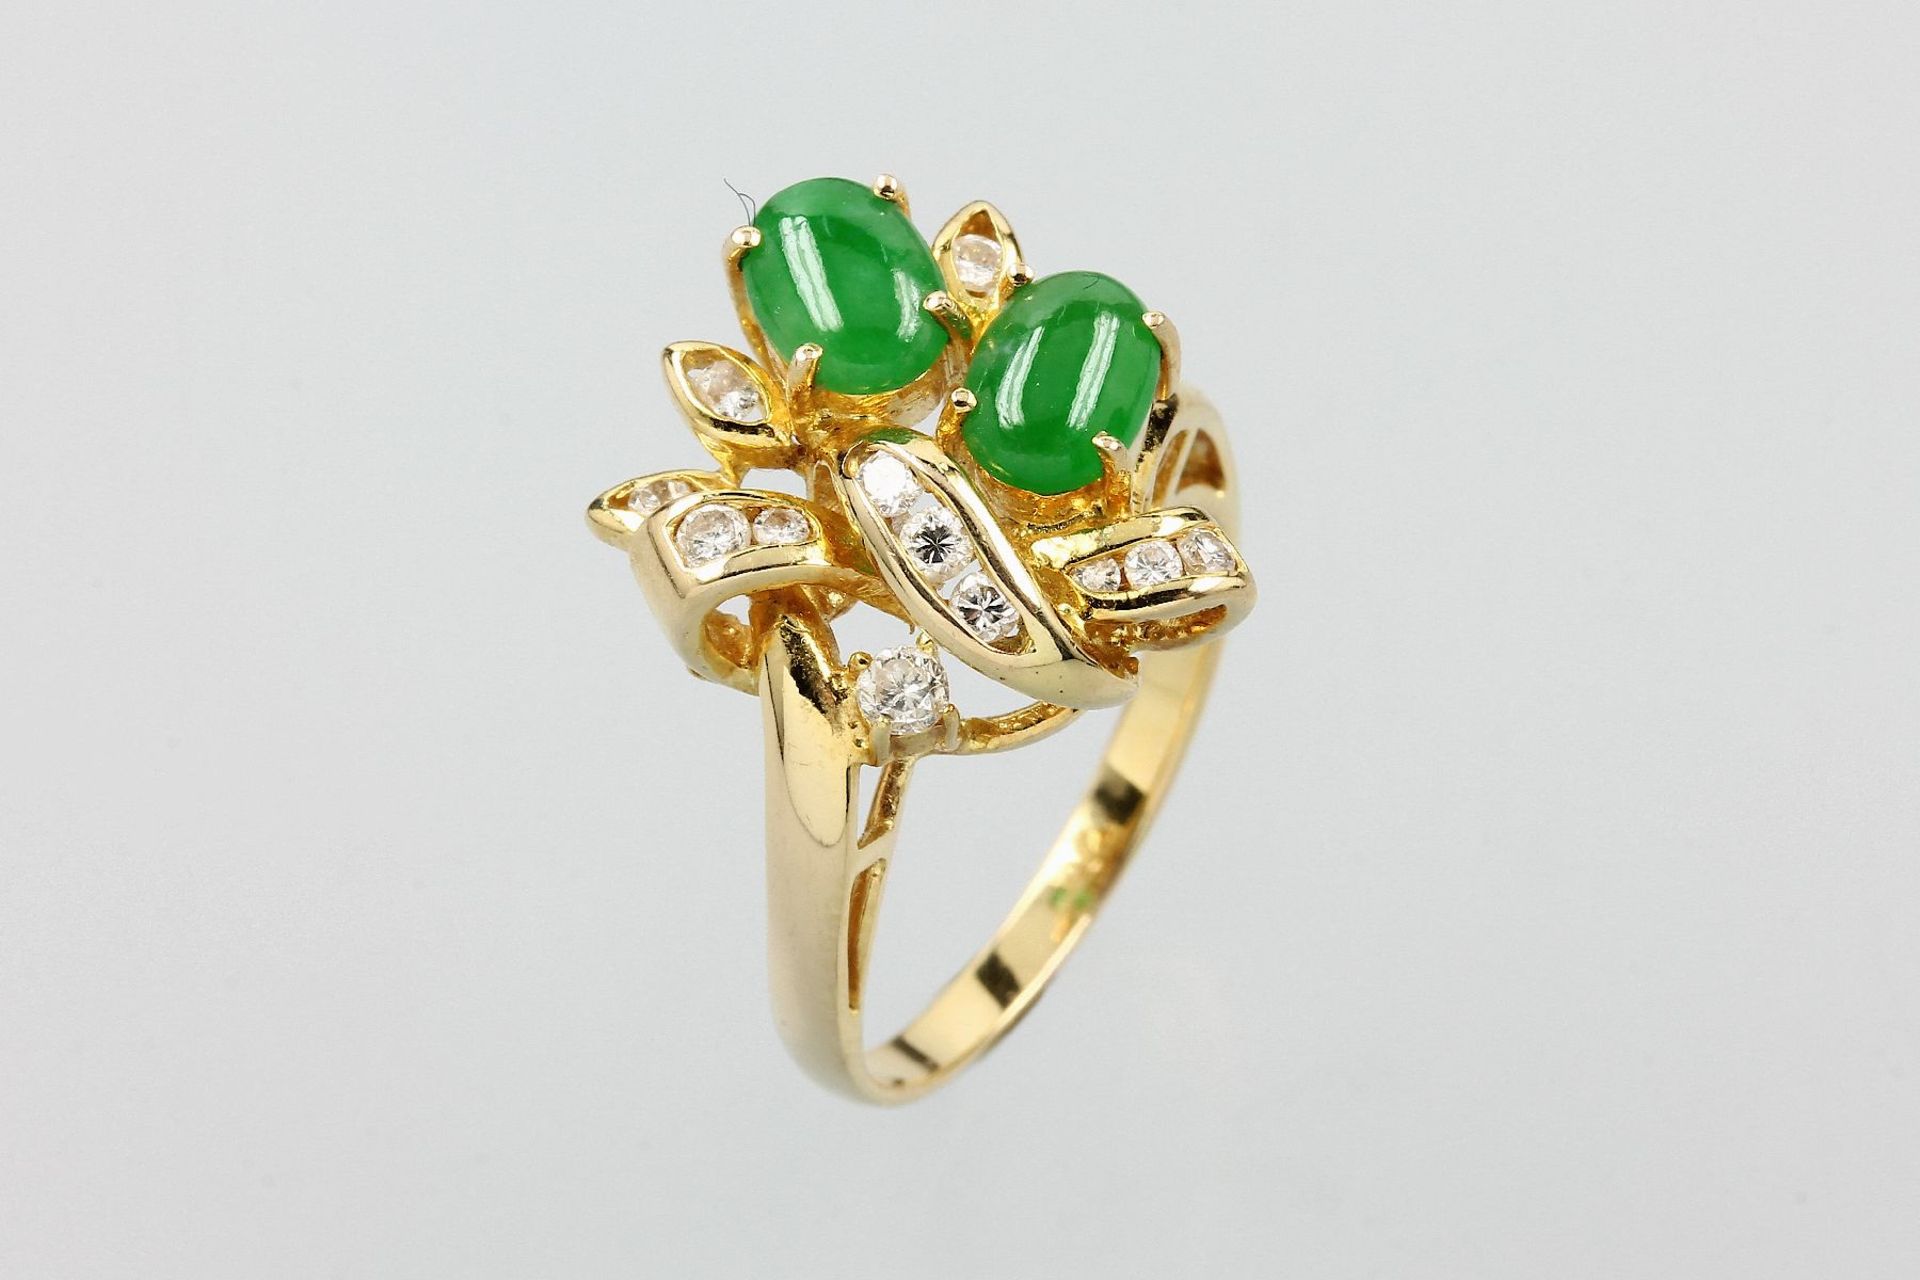 18 kt Gold Ring mit Jade und Brillanten, GG750/000, 2 ovale Jadecabochons zus. ca. 1.20 ct, 13